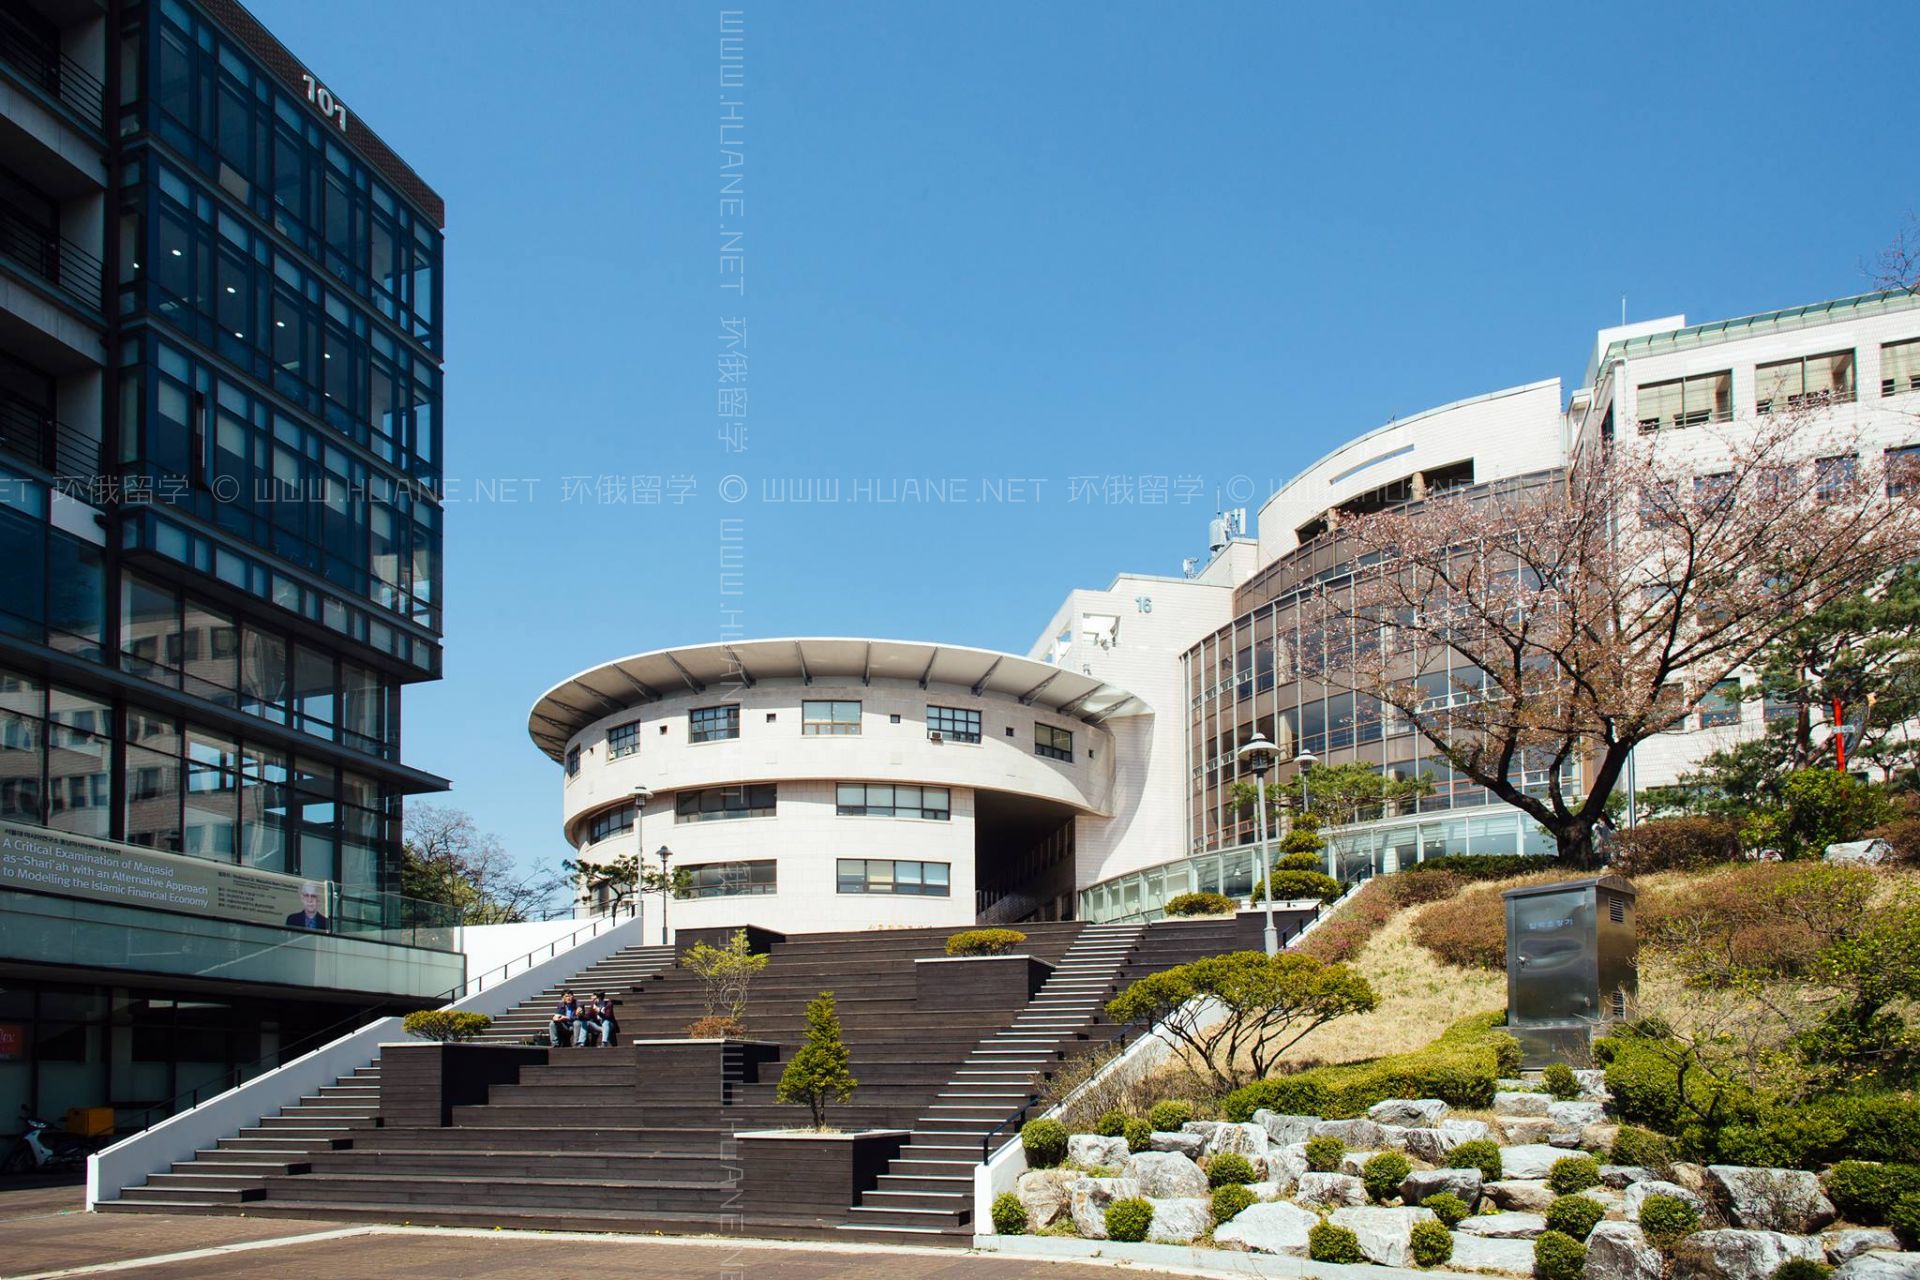 首尔国立大学